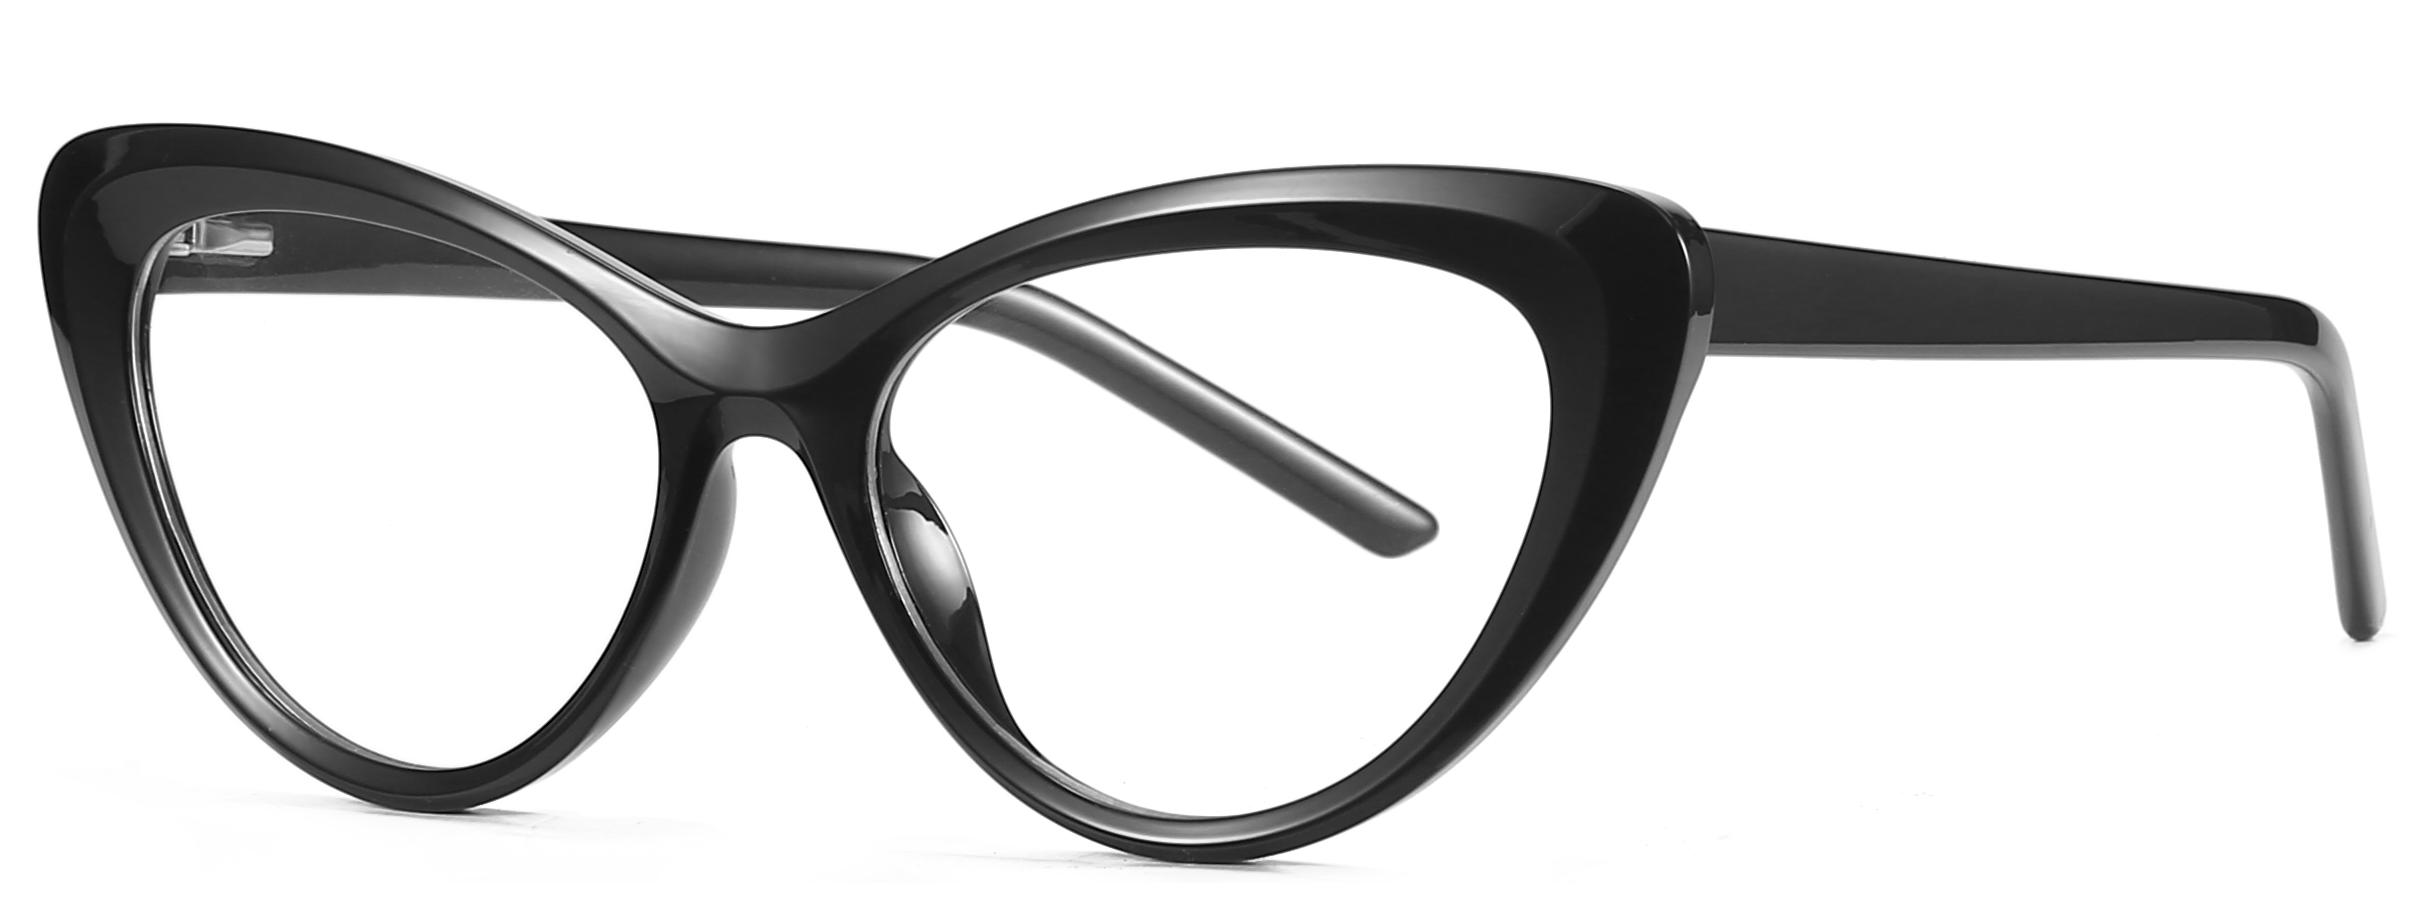 Ready Goods Fashion Forme ochi de pisică TR90+CP Lentilă anti-albăstruie Rame optice pentru femei #2020